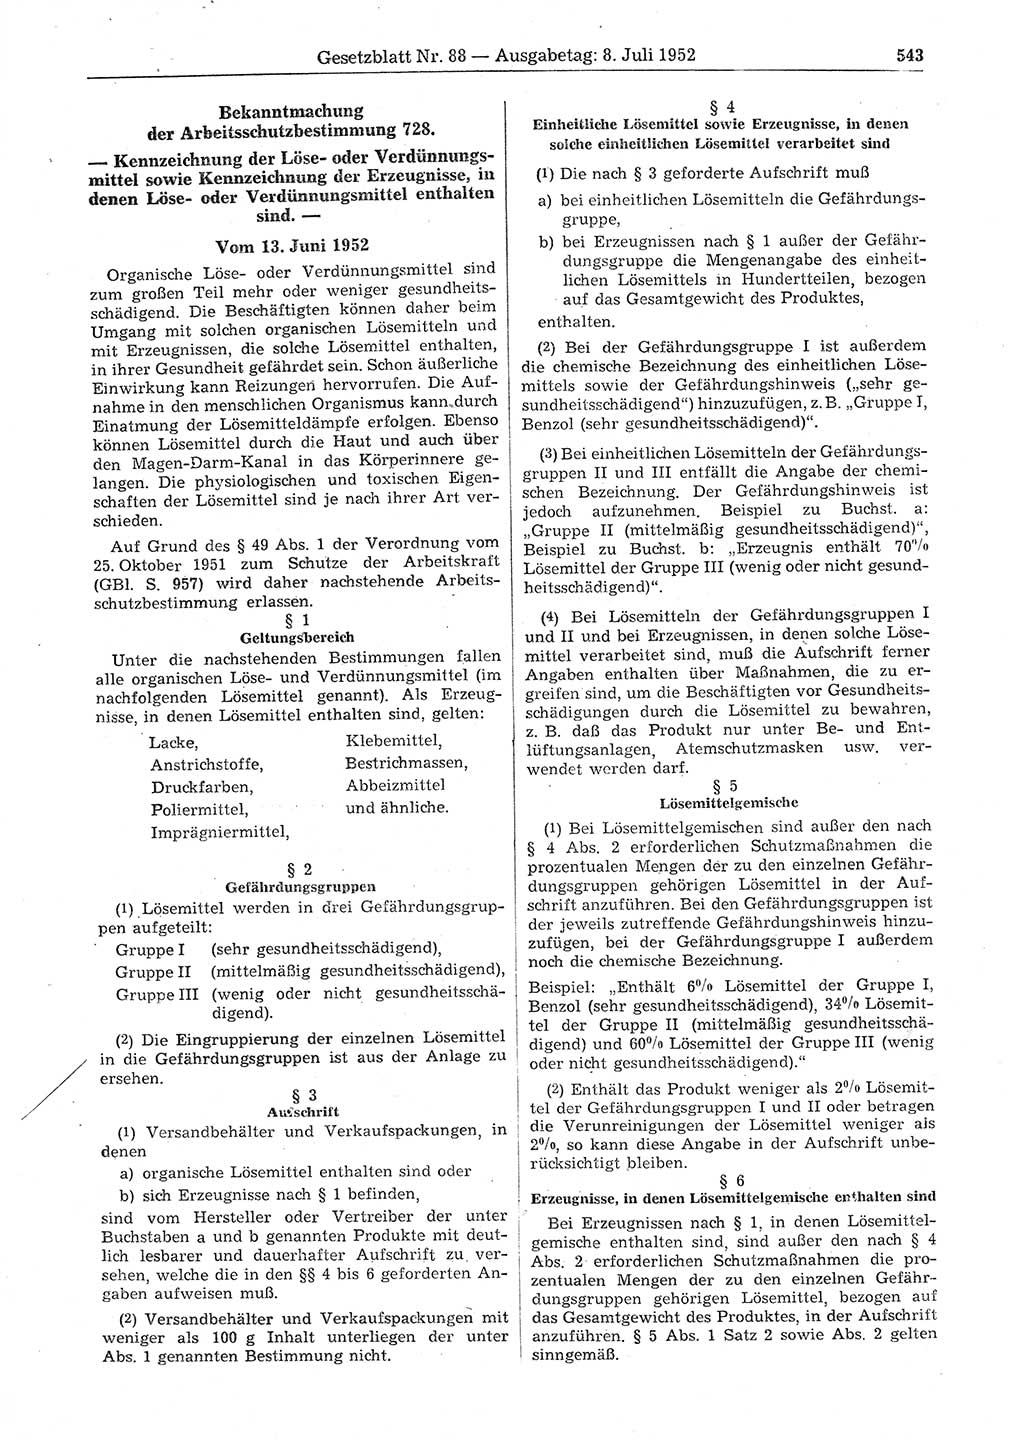 Gesetzblatt (GBl.) der Deutschen Demokratischen Republik (DDR) 1952, Seite 543 (GBl. DDR 1952, S. 543)